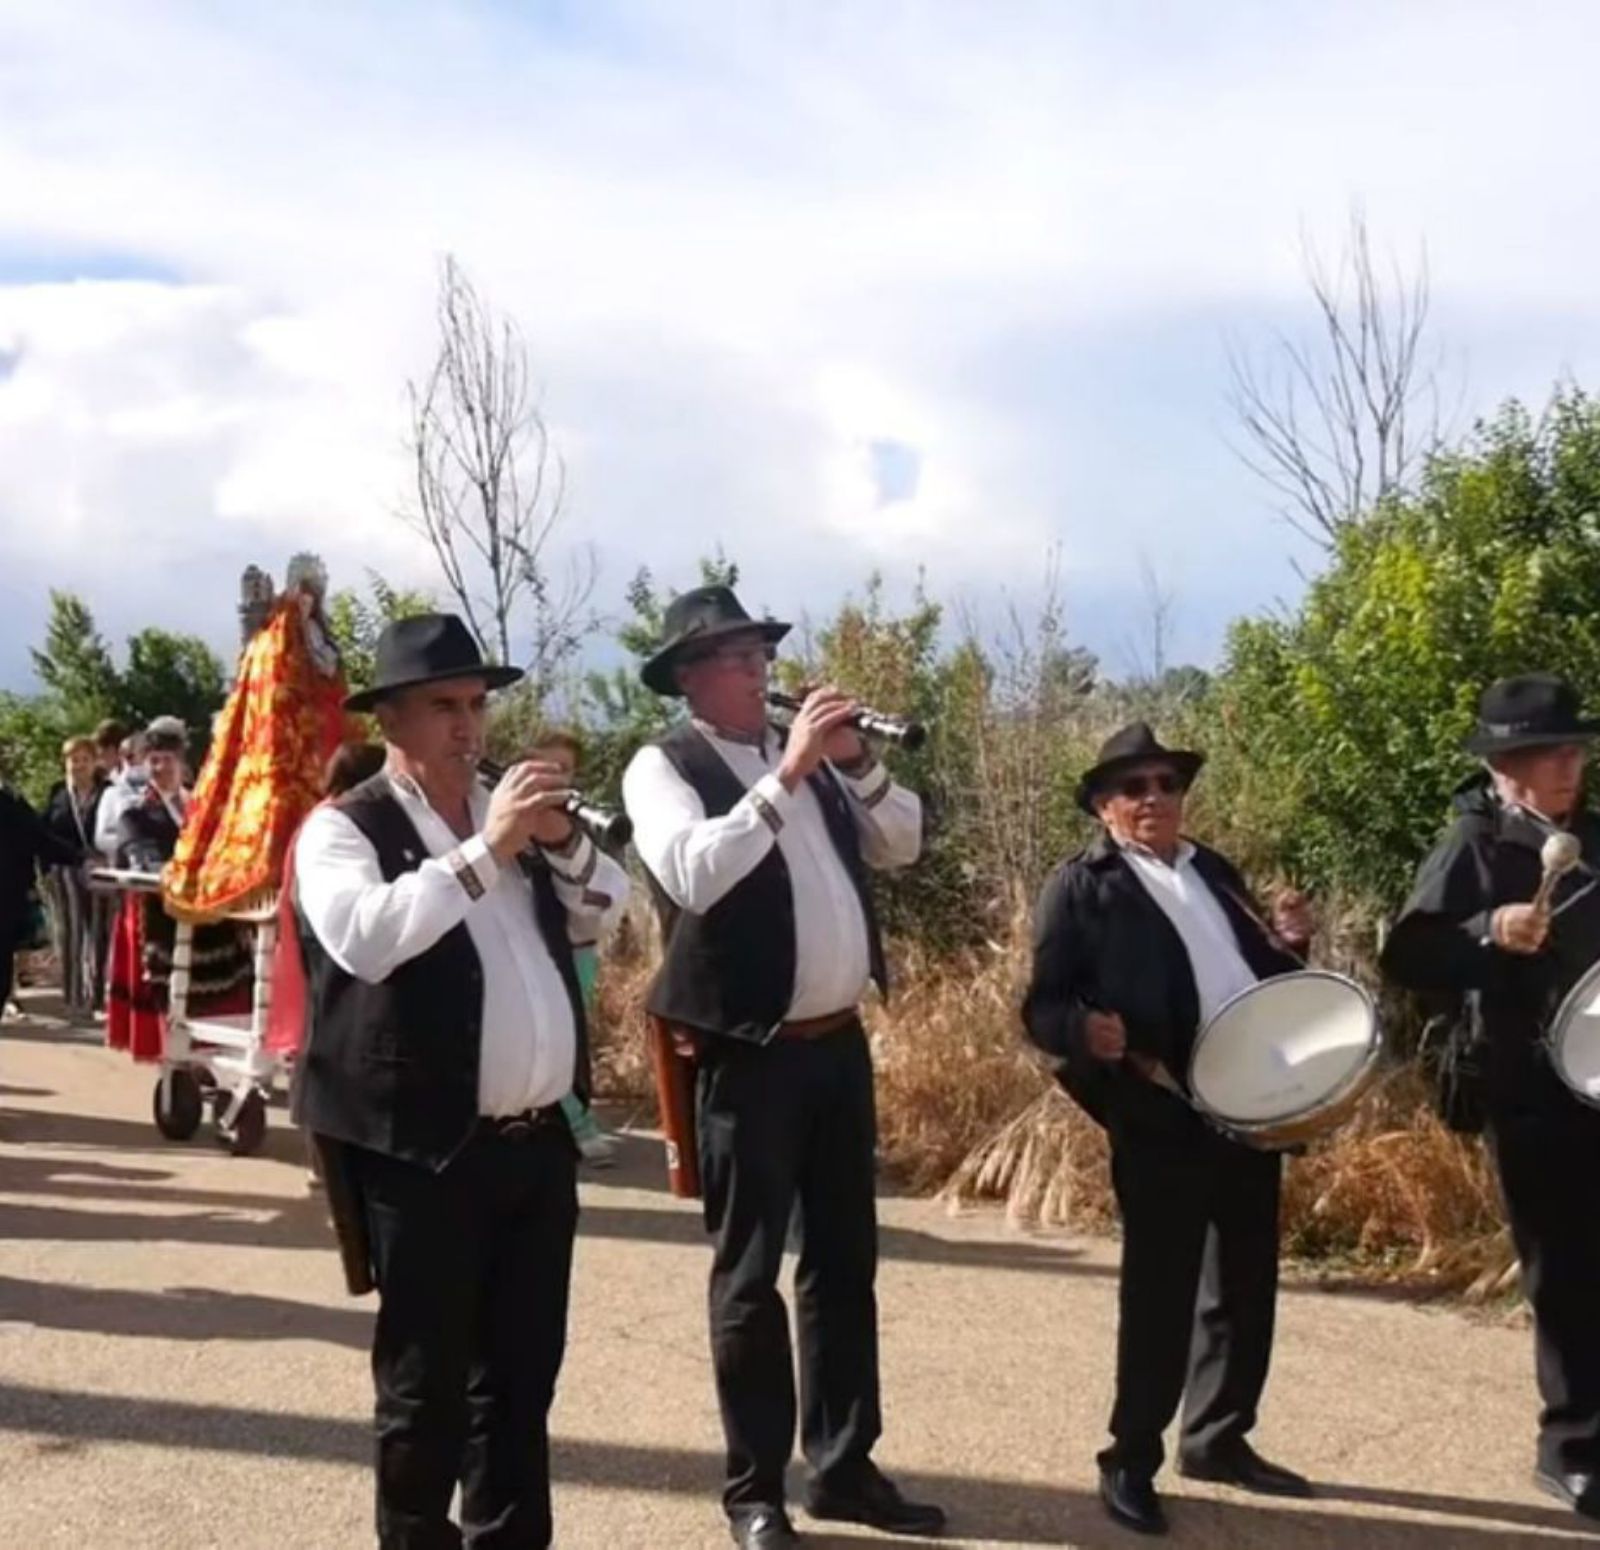 La música de los dulzaineros animó el desfile procesional. | E. P.